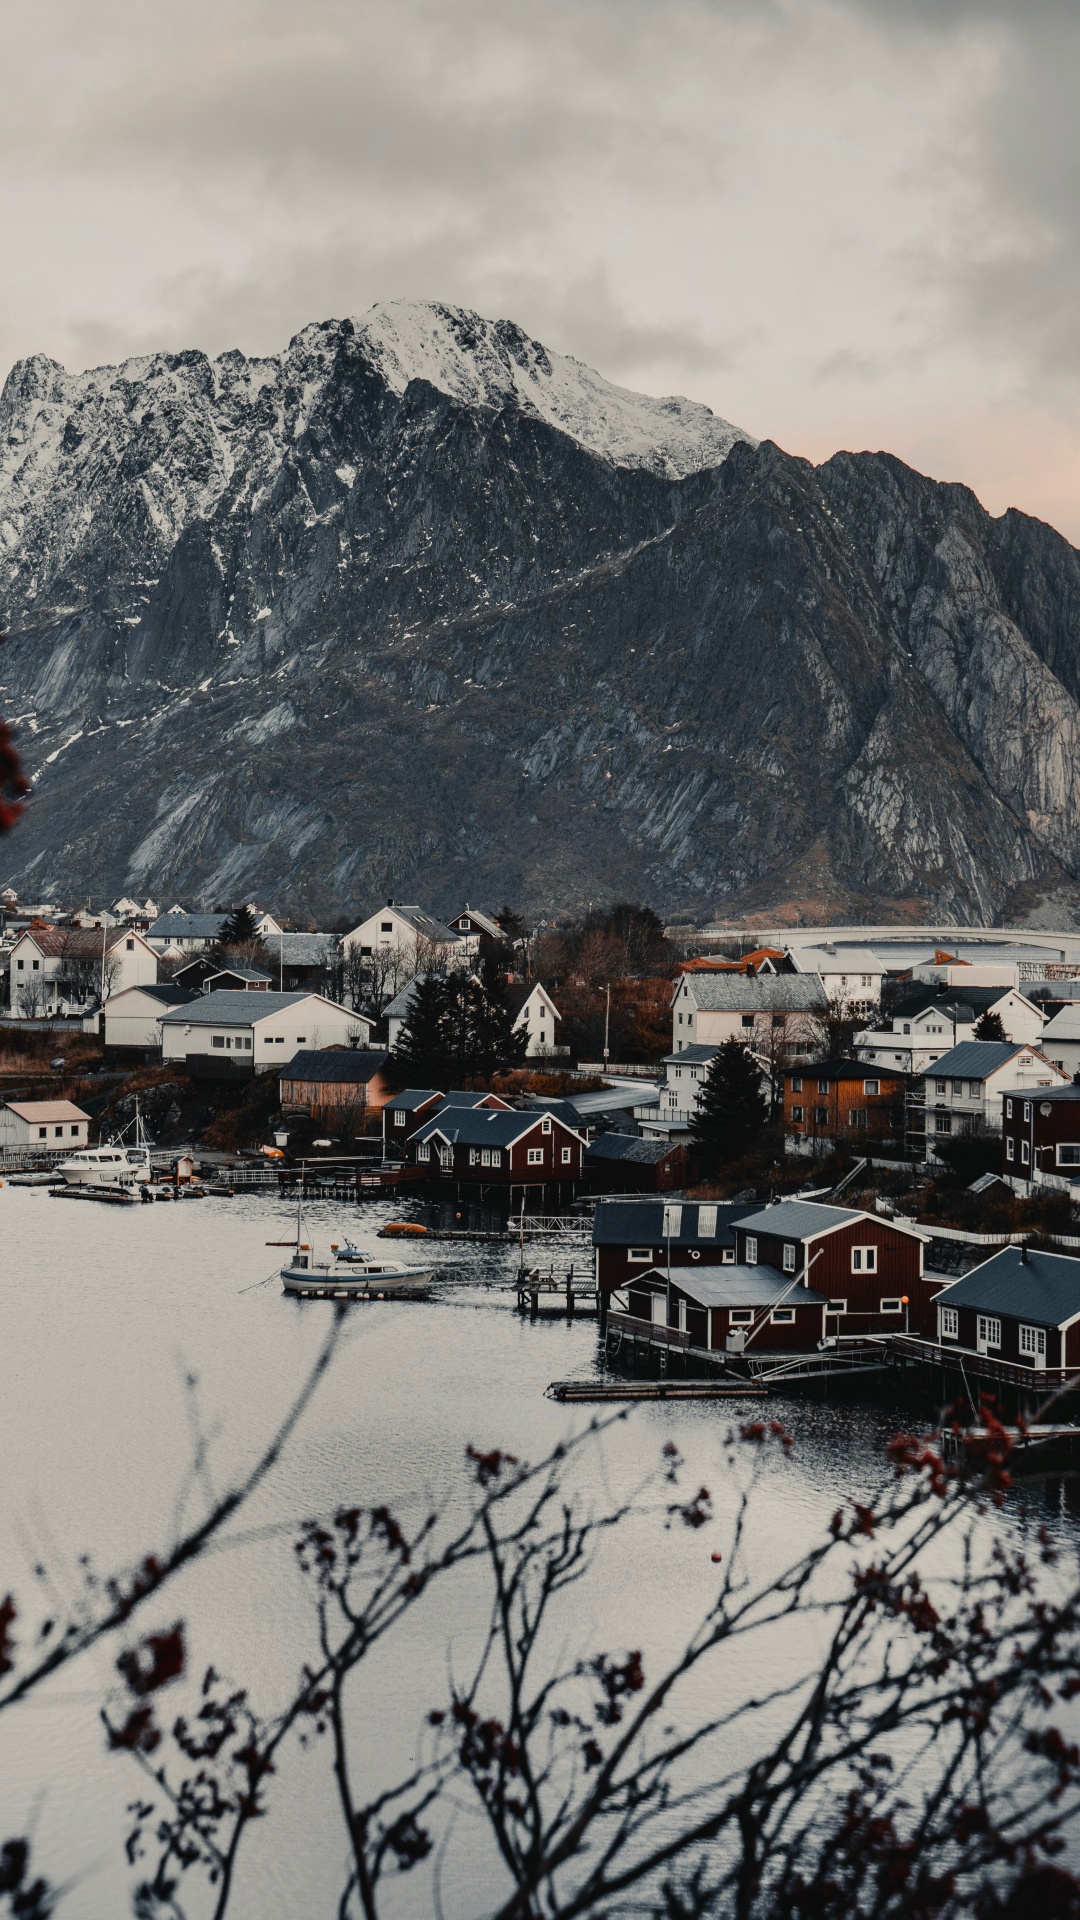 Mountainous Landforms, Mountain, Mountain Range, Reflection, Snow. Wallpaper in 1080x1920 Resolution